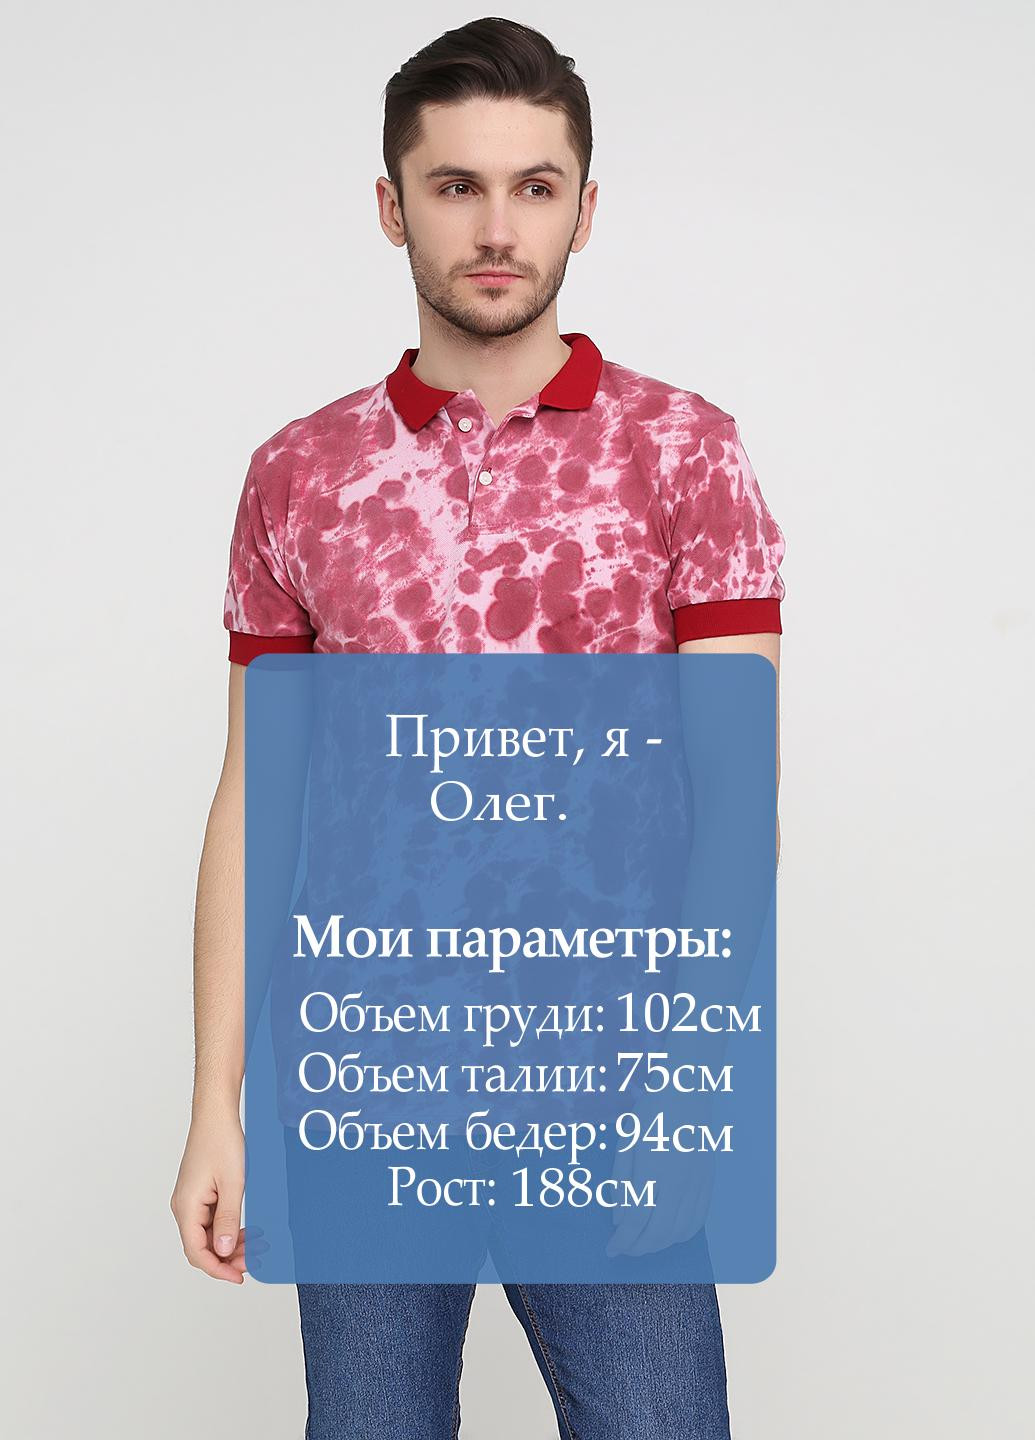 Бордовая футболка-поло для мужчин Chiarotex с абстрактным узором